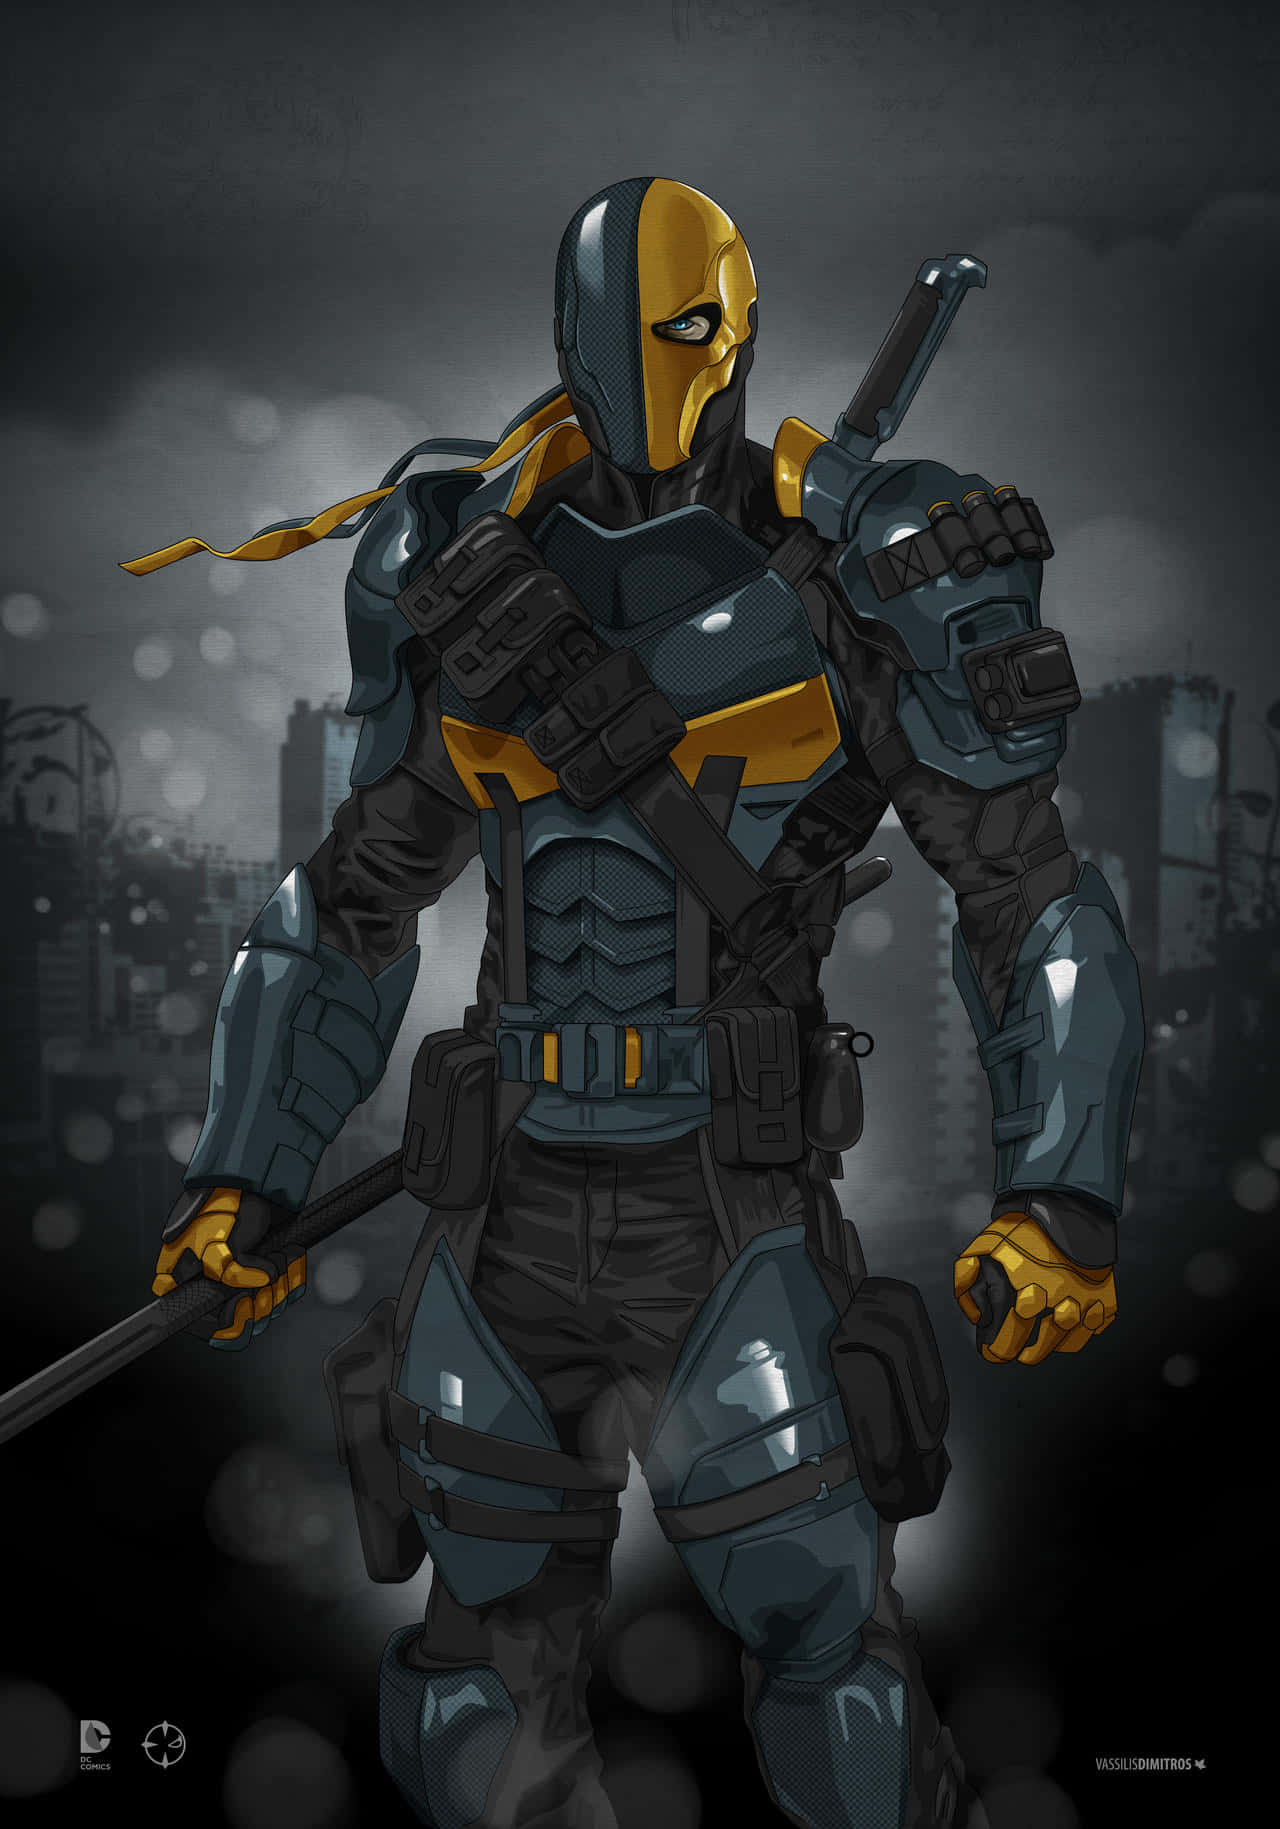 The Masked Vigilante - Deathstroke